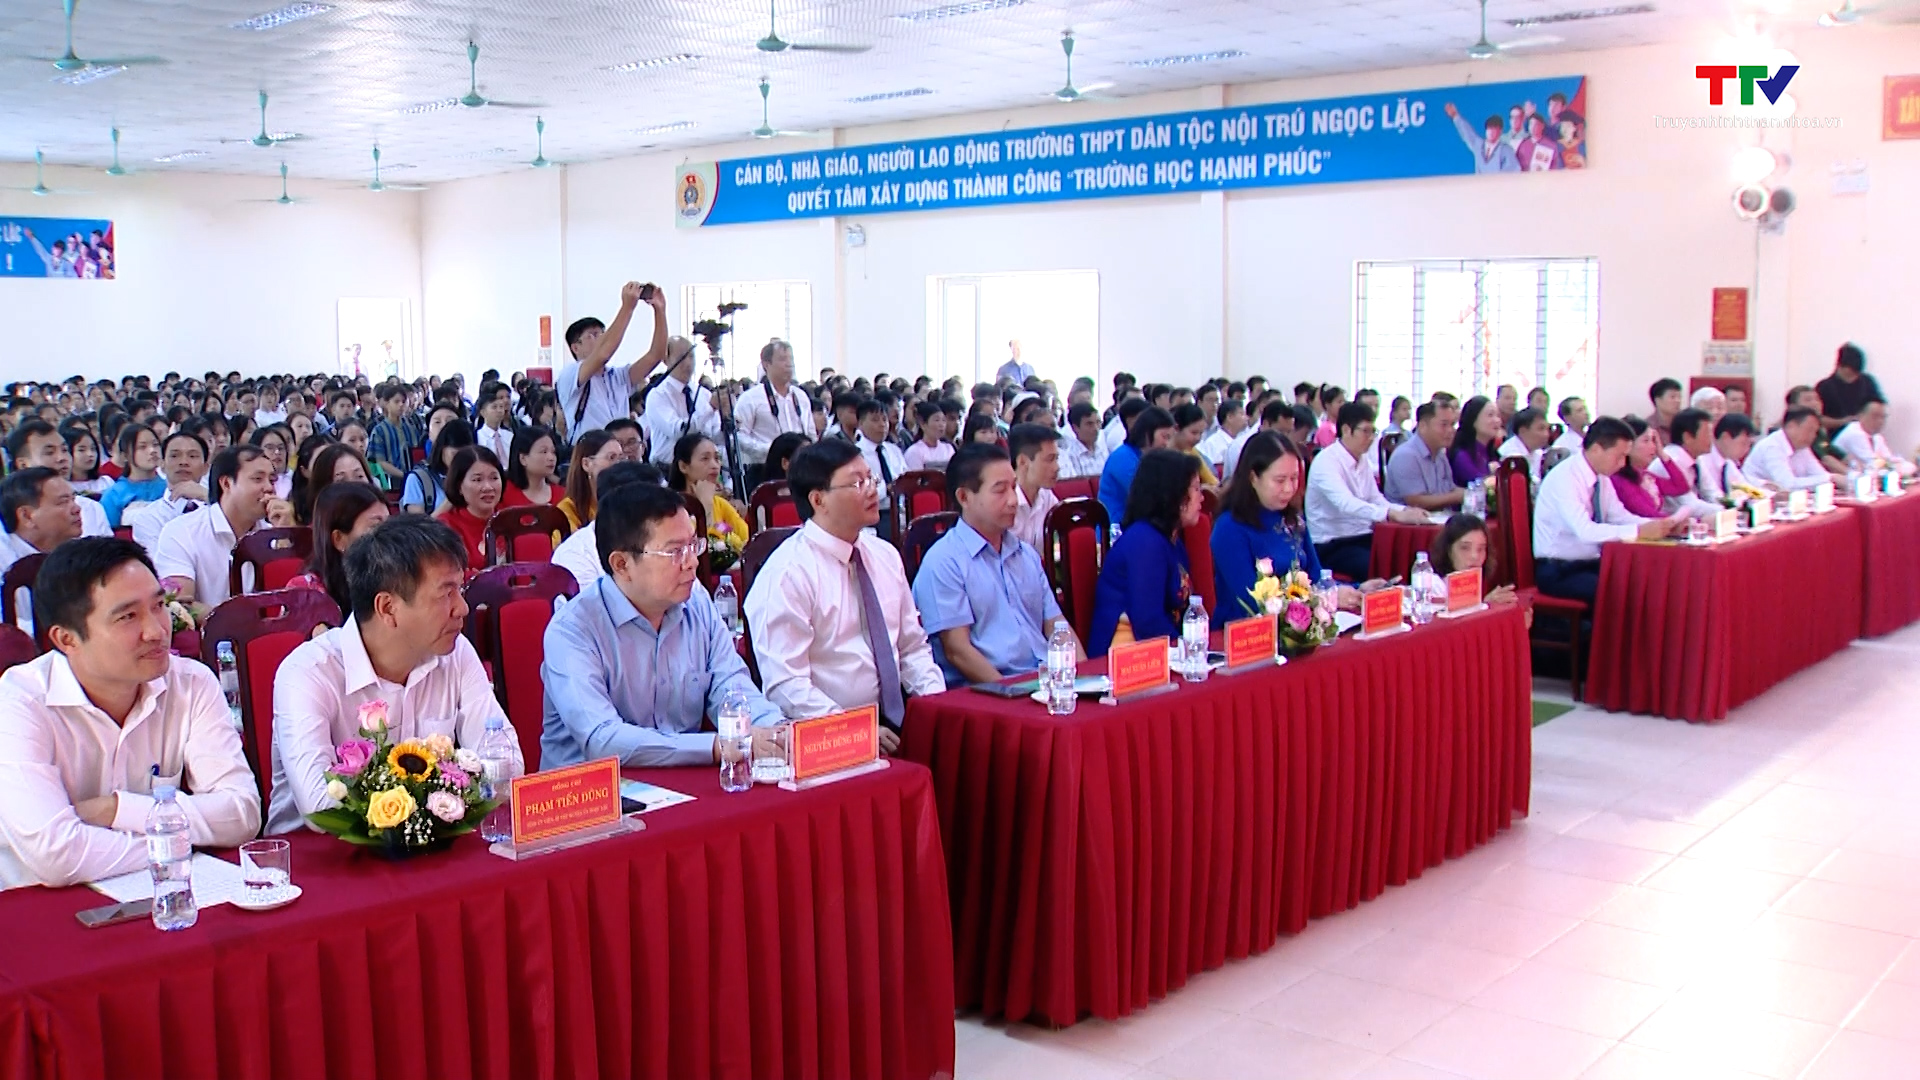 Phó Chủ tịch nước Võ Thị Ánh Xuân dự Lễ khai giảng năm học mới tại trường THPT Dân tộc nội trú Ngọc Lặc - Ảnh 4.